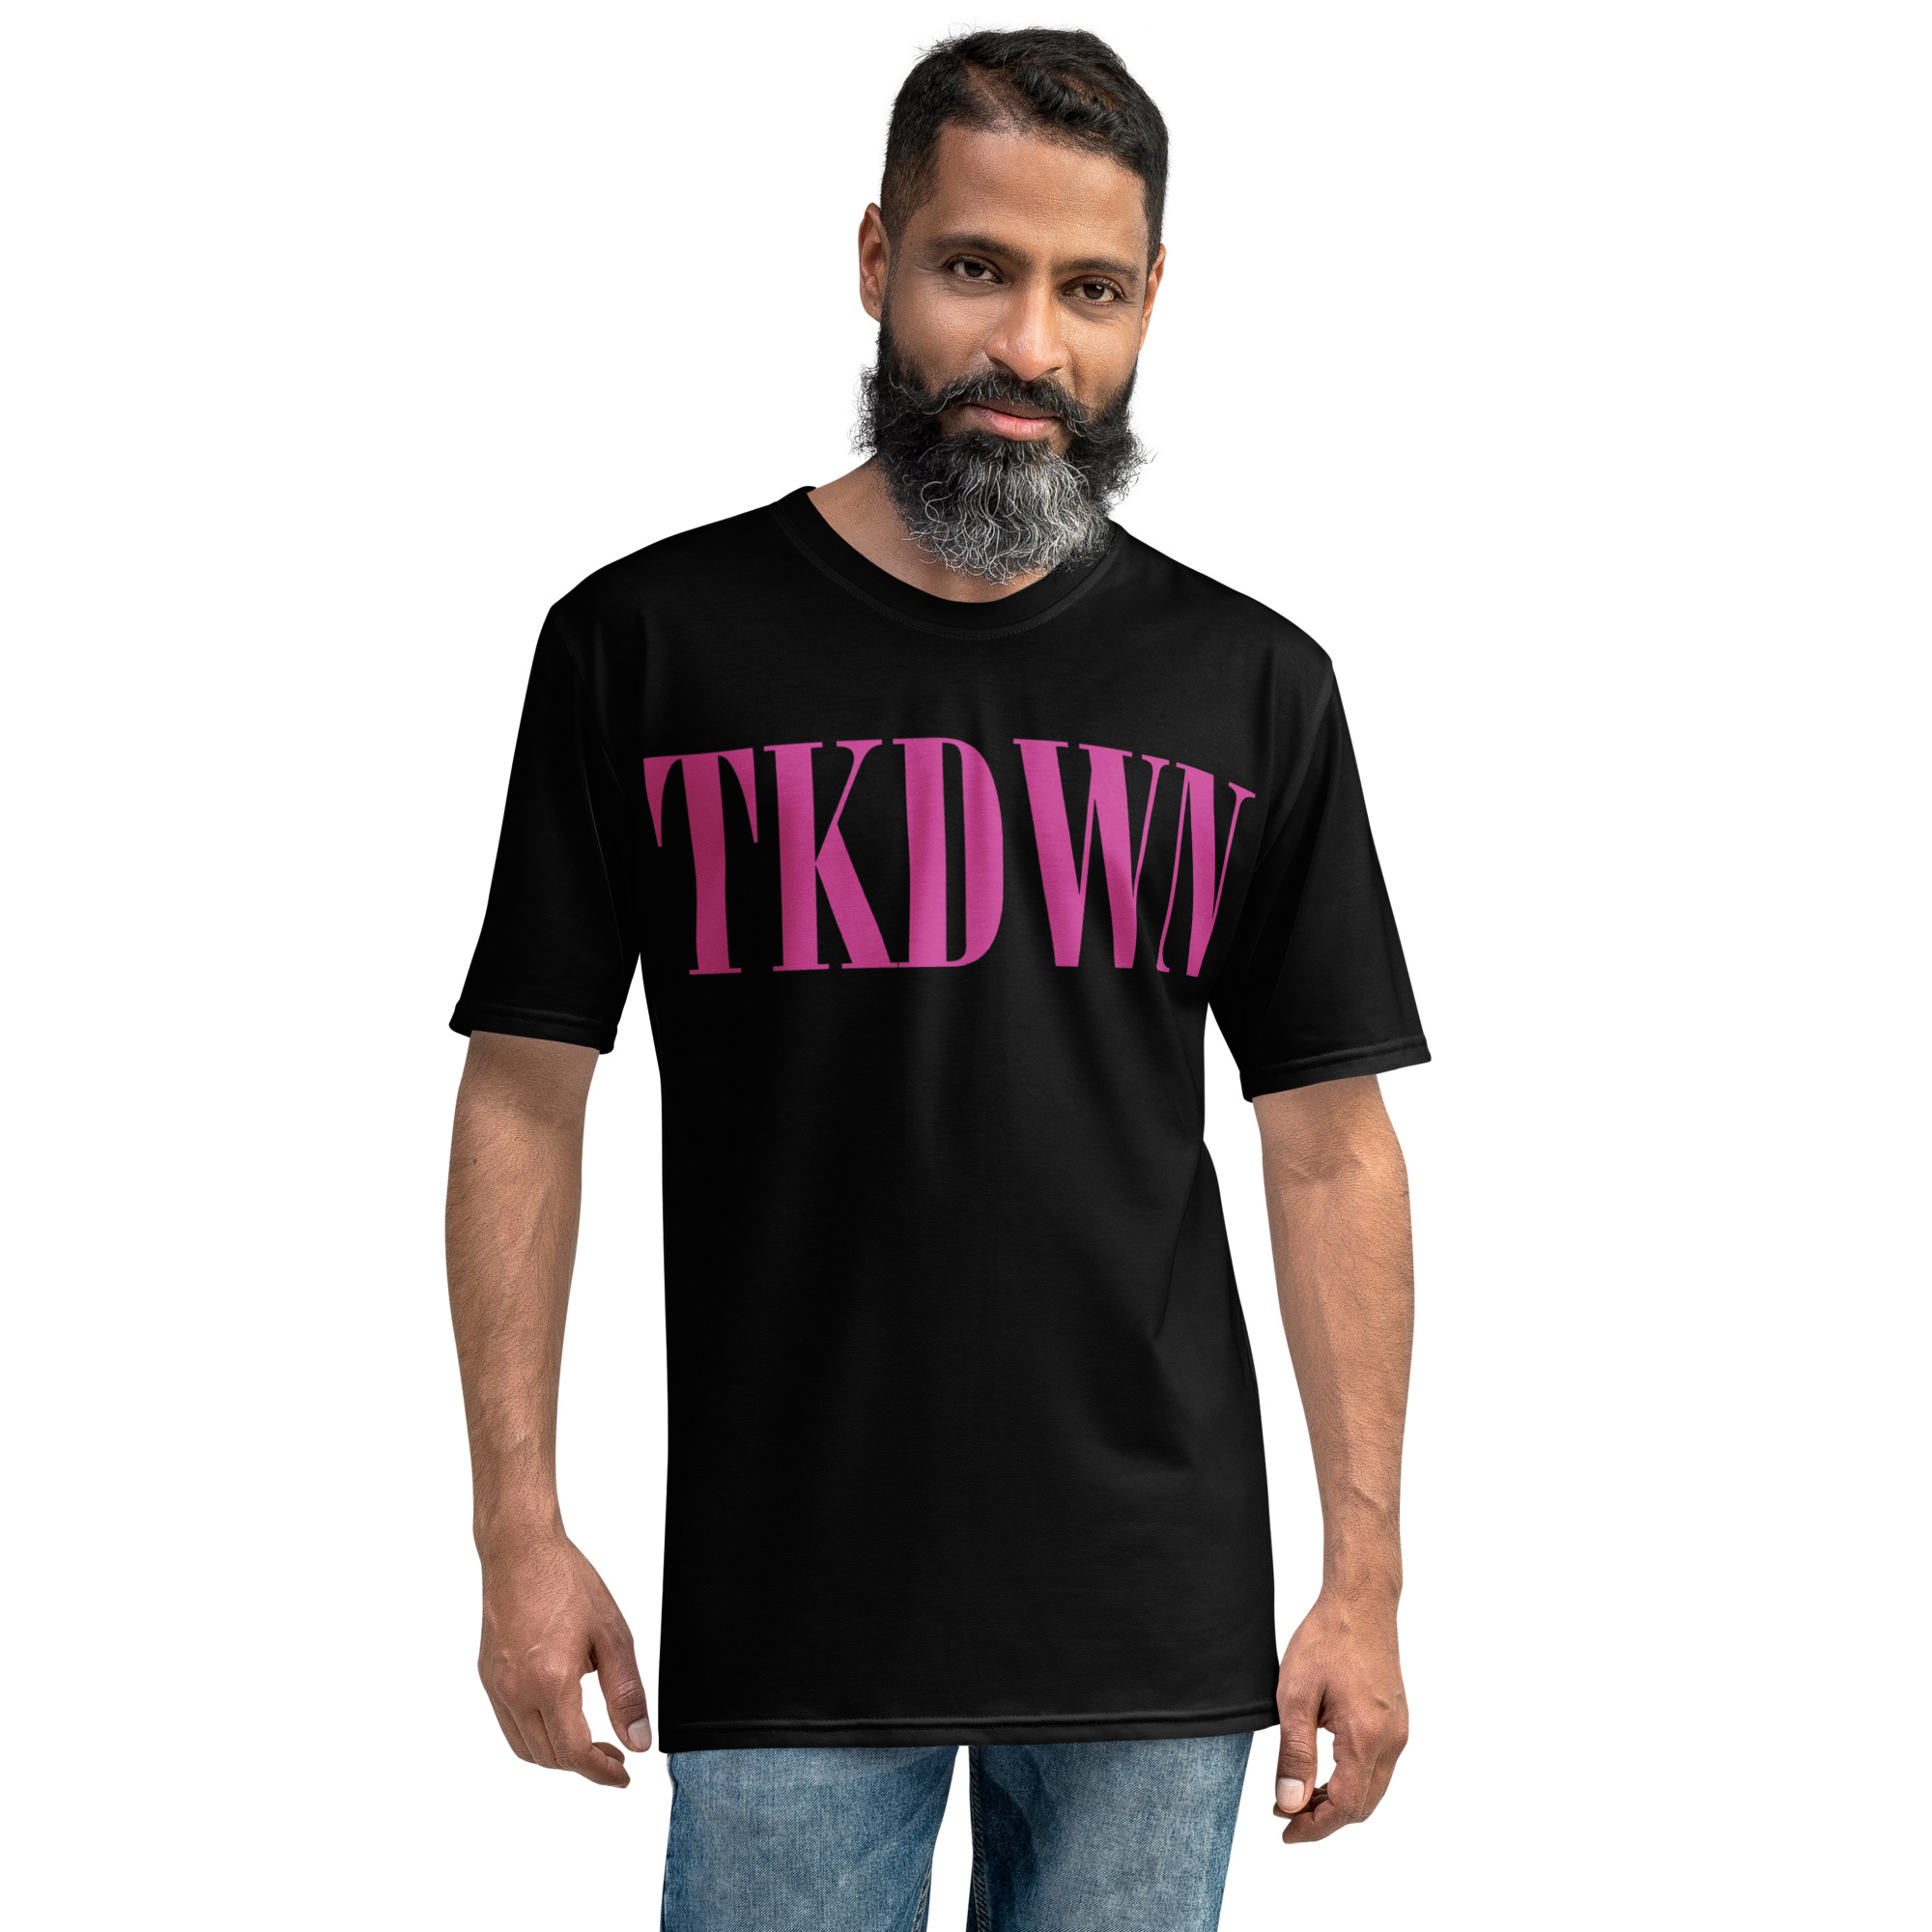 TKDWN Men’s t-shirt